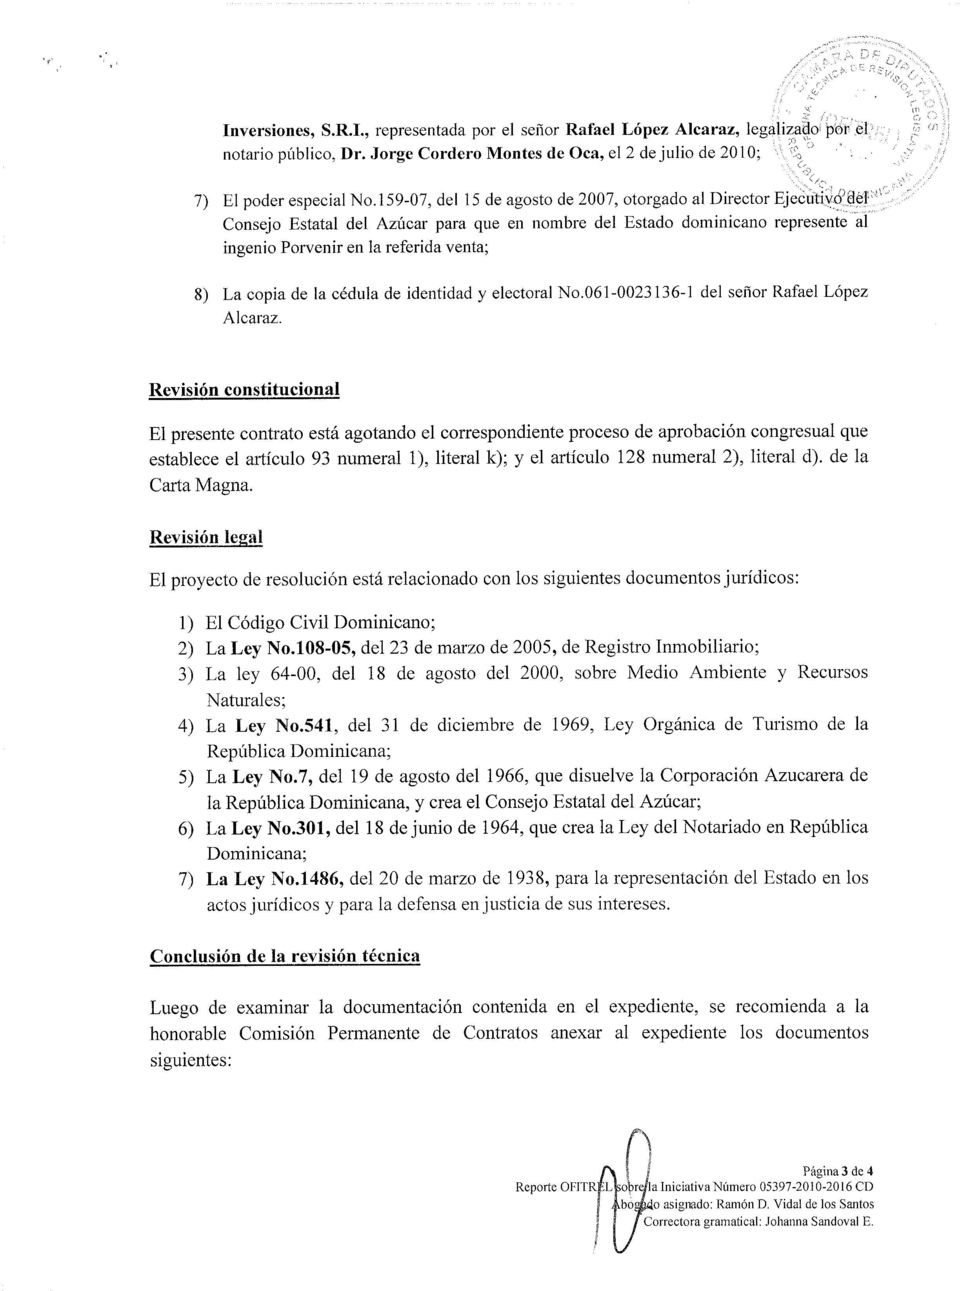 copia de la cédula de identidad y electoral No.061-0023136-1 del señor Rafael López Alcaraz.